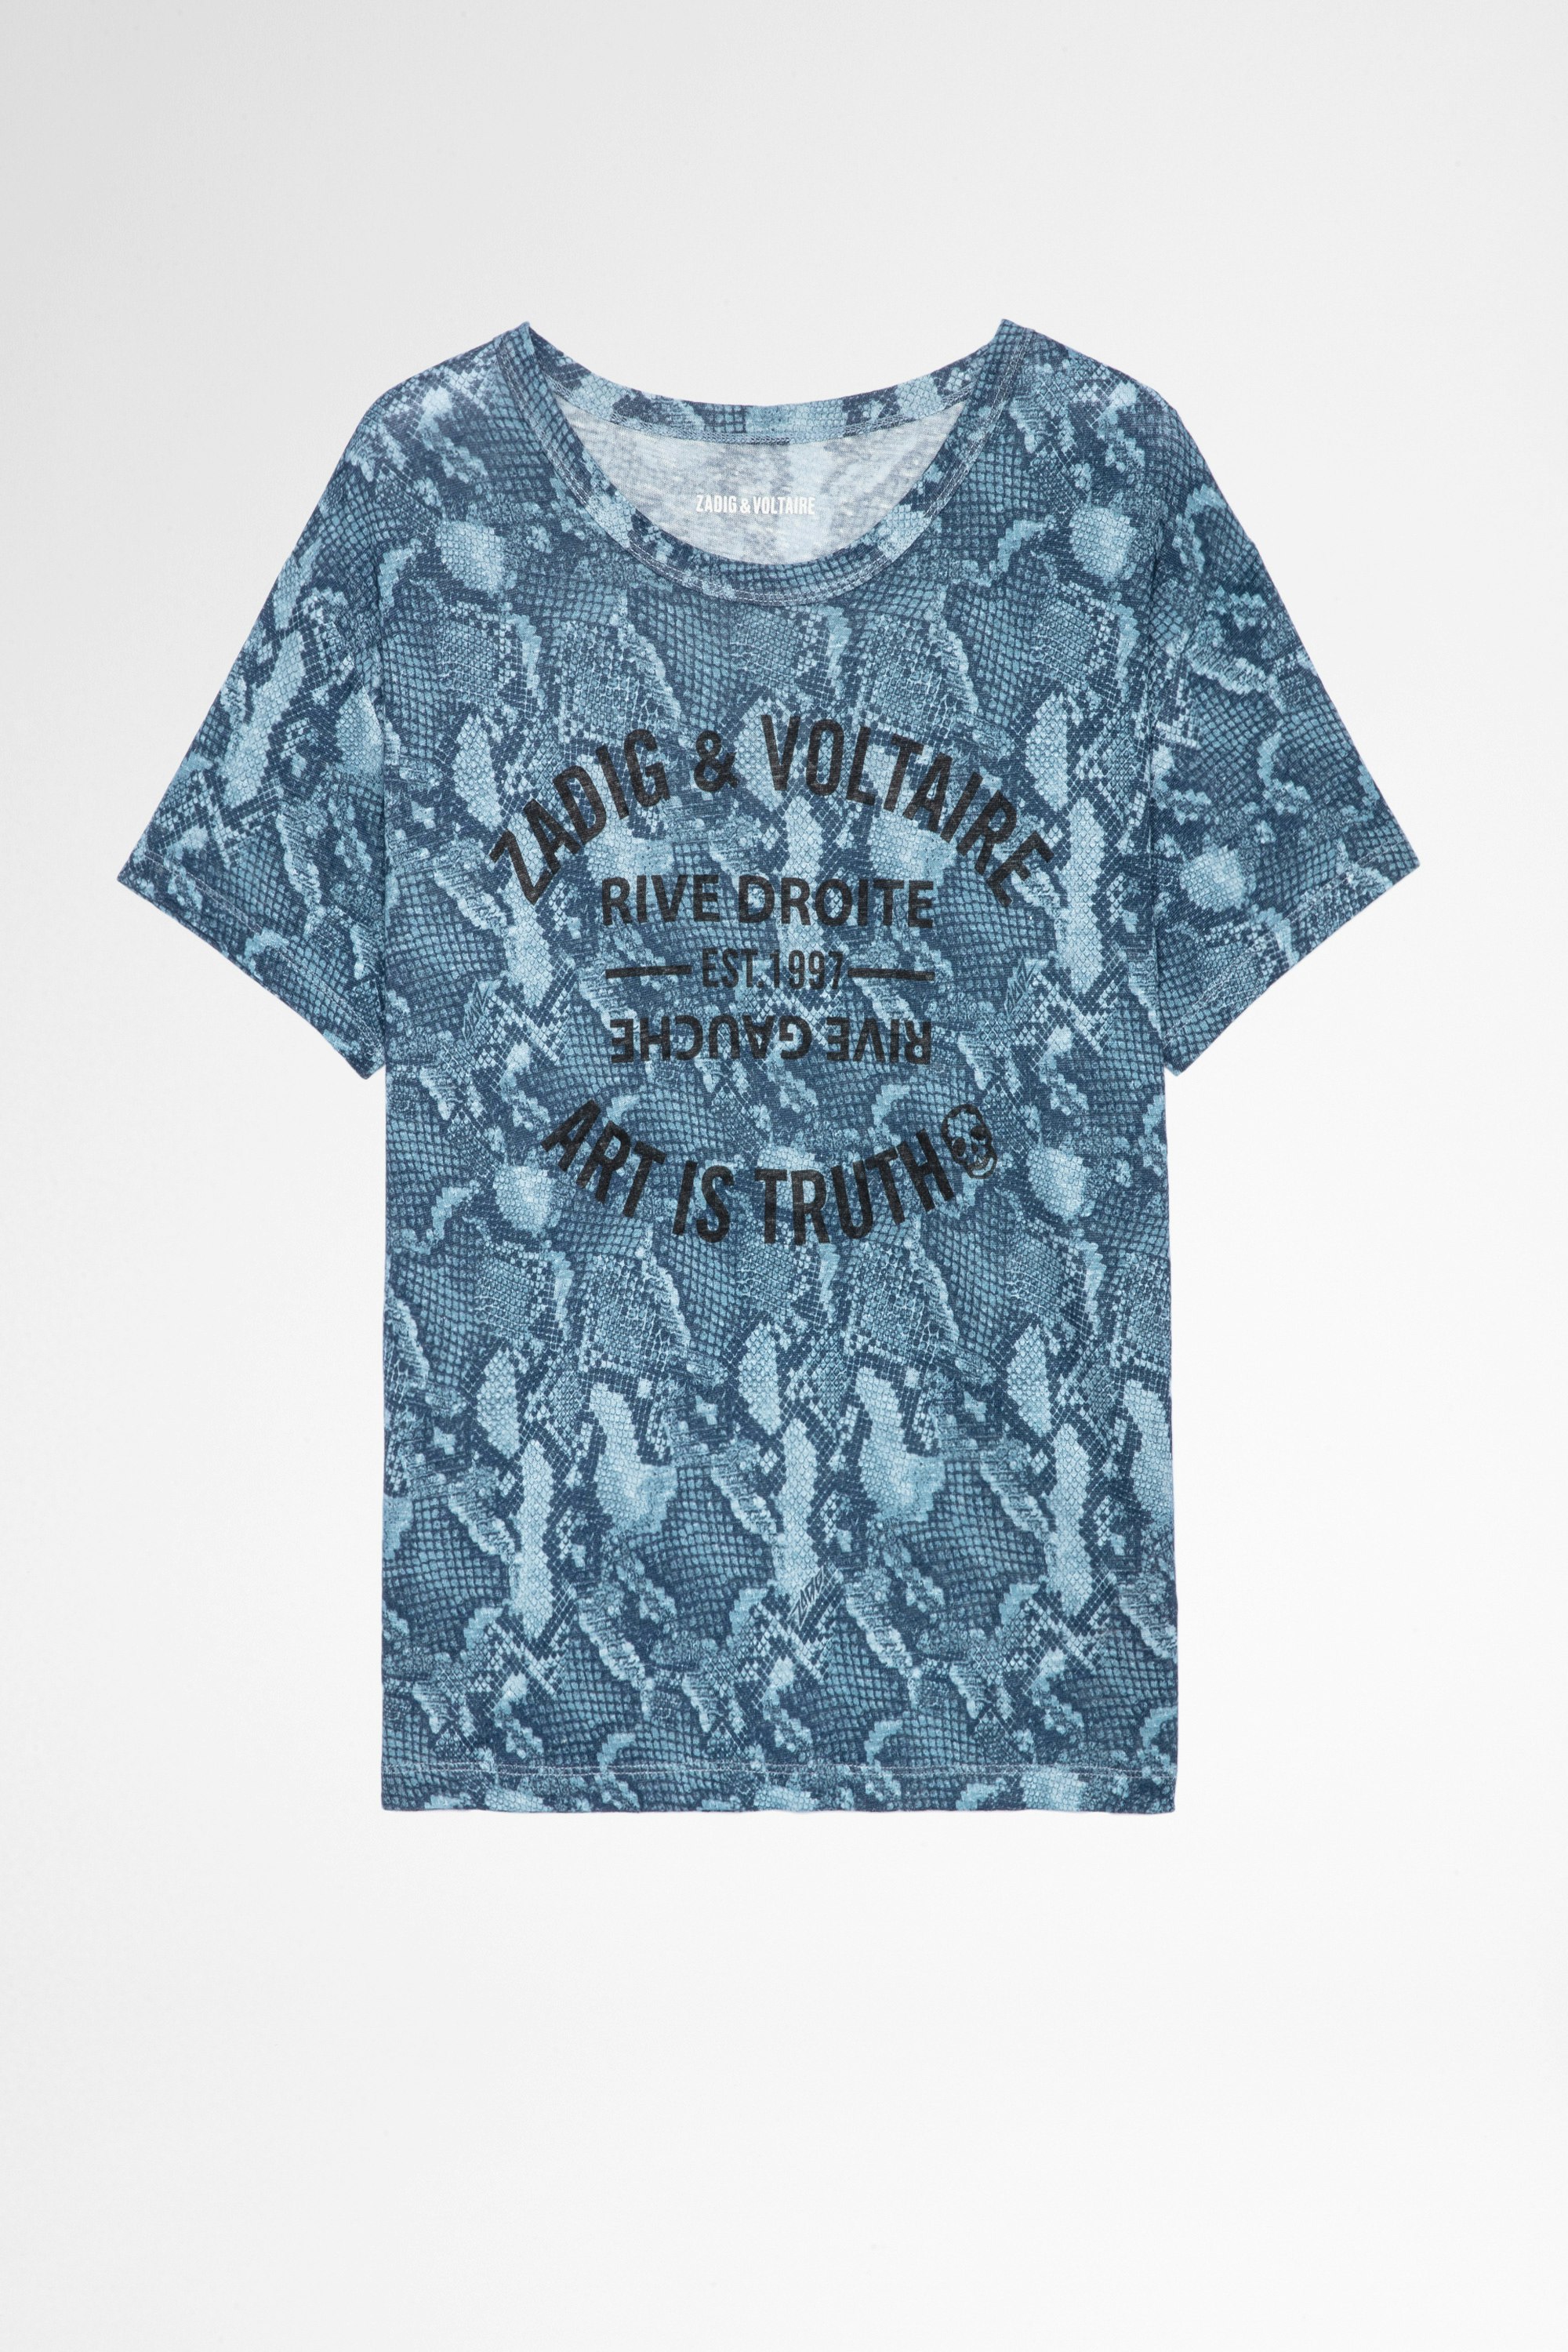 Camiseta Marta Wild Blason Lino Camiseta azul de lino con impresión de efecto pitón y escudo, para mujer